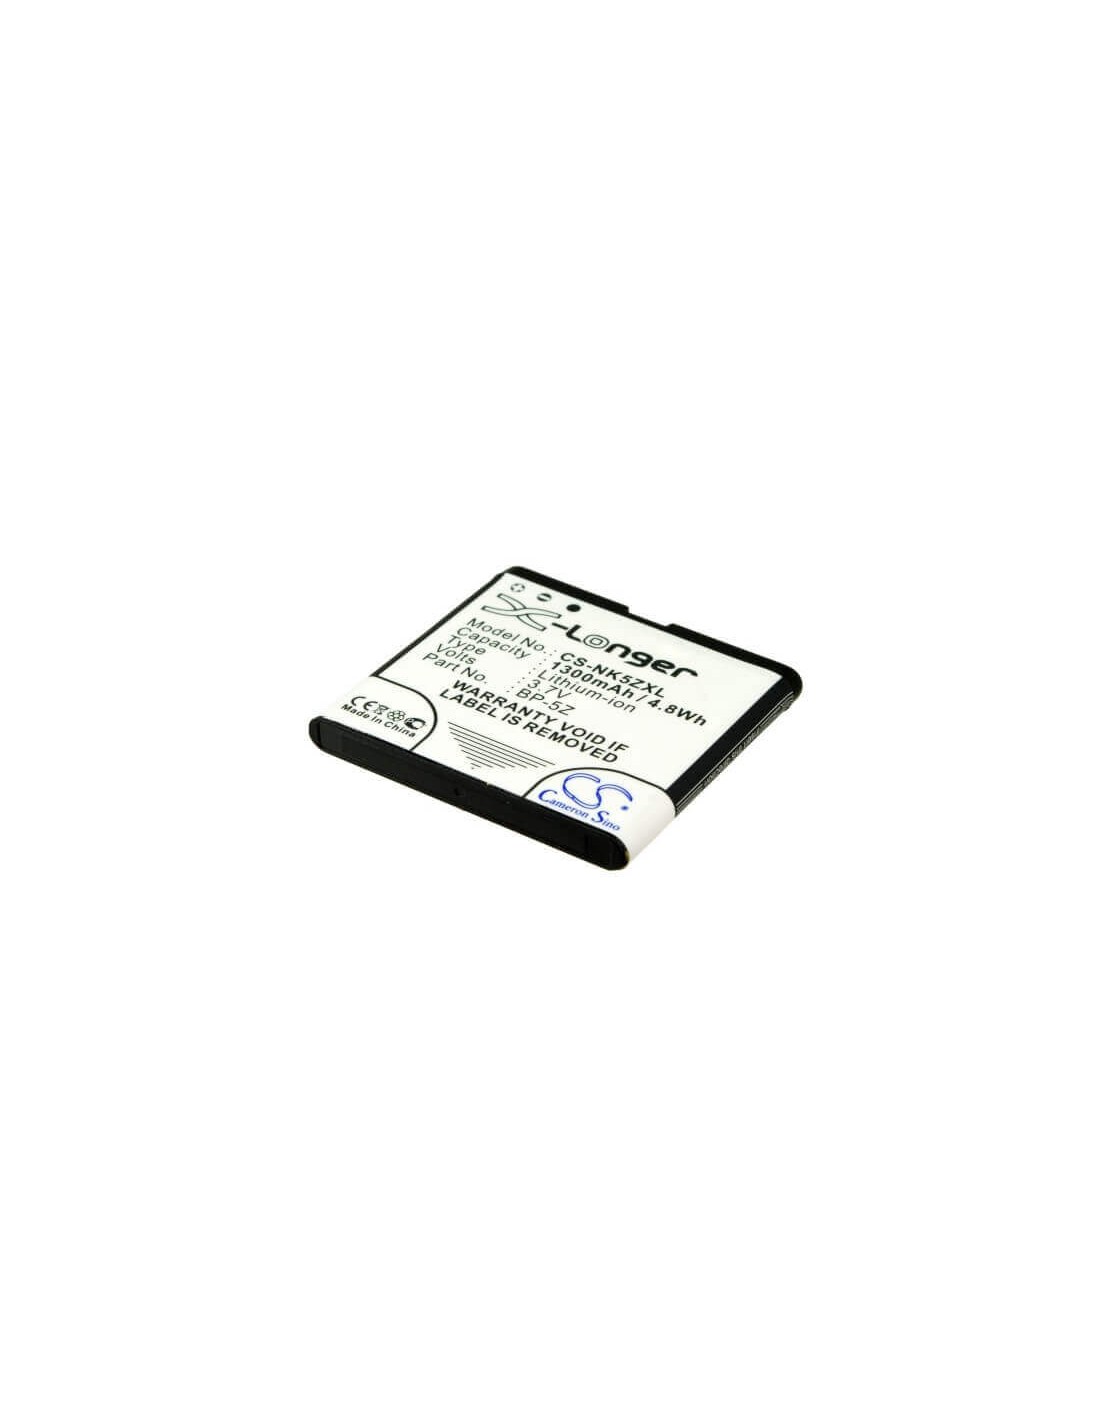 Battery for Nokia 700, Zeta N700 3.7V, 1300mAh - 4.81Wh